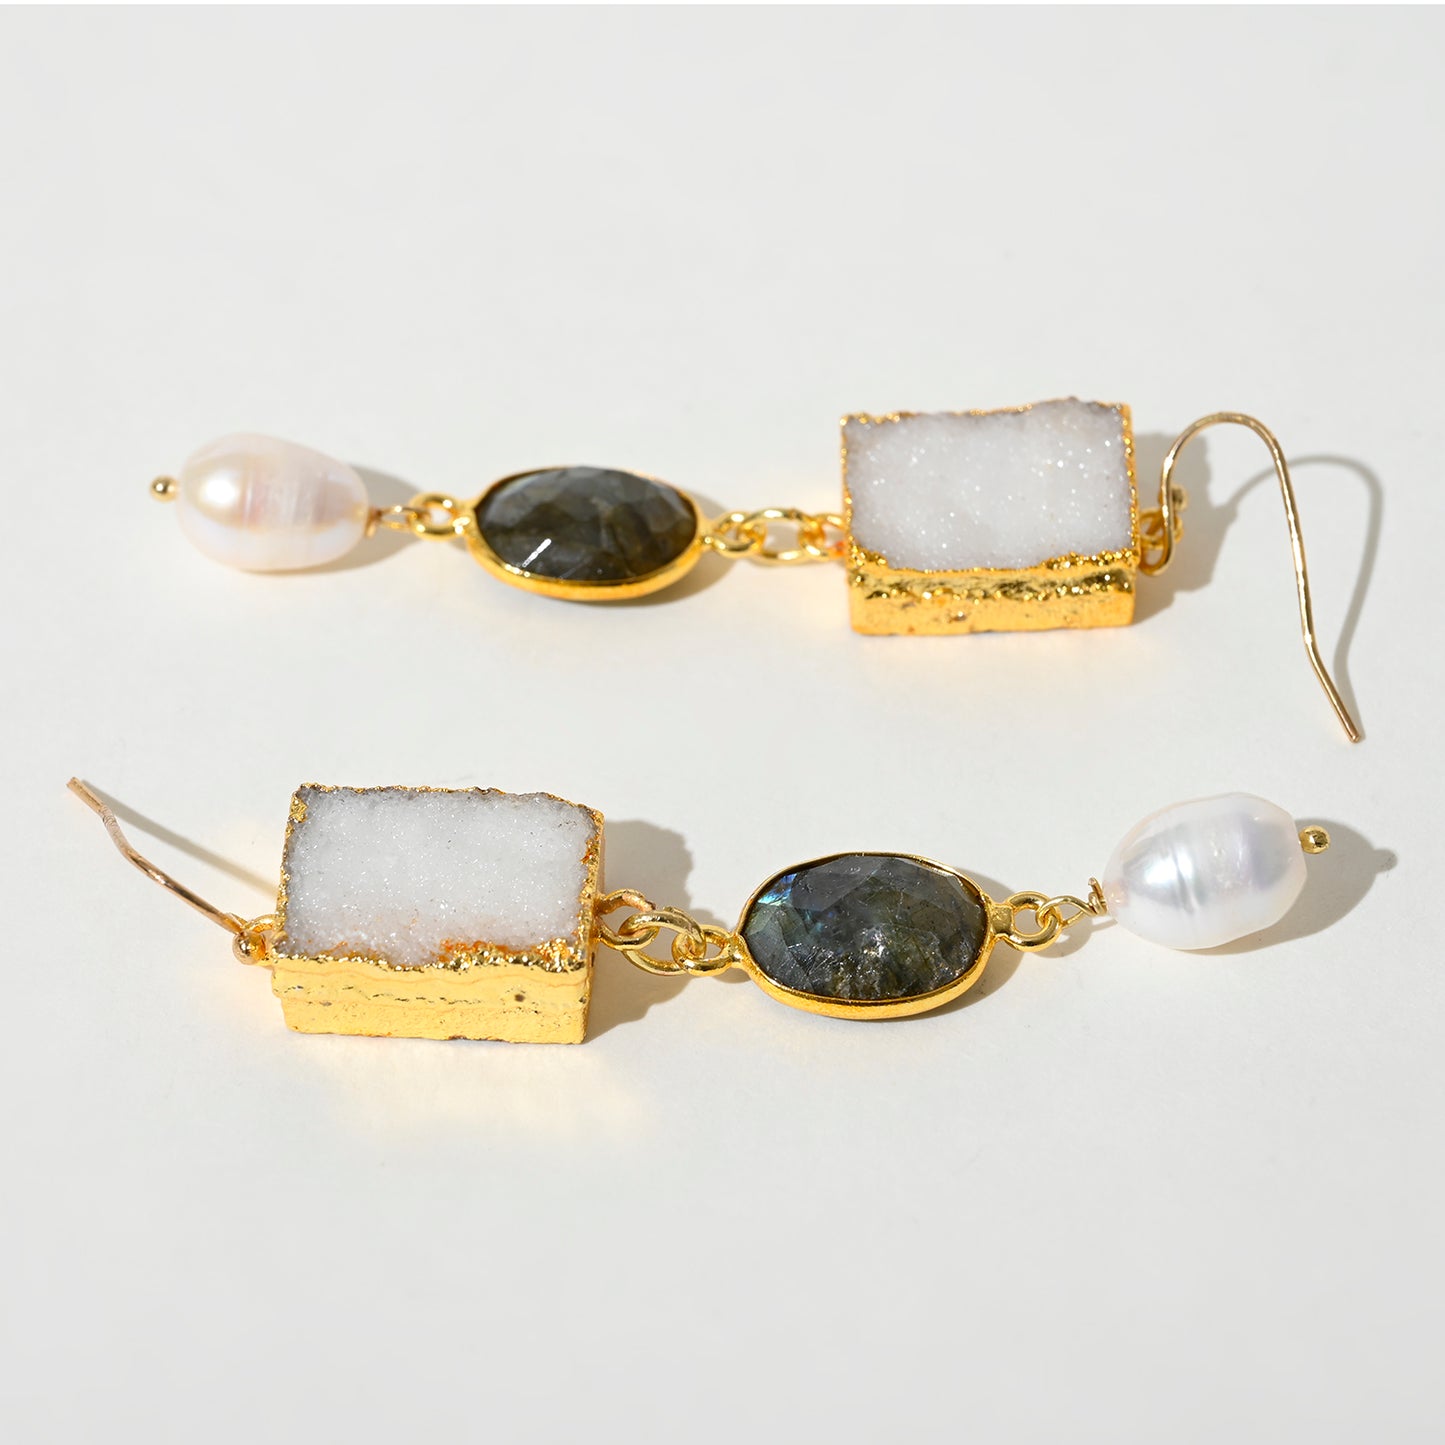 Gemstone Baroque Pearl Drop Earrings